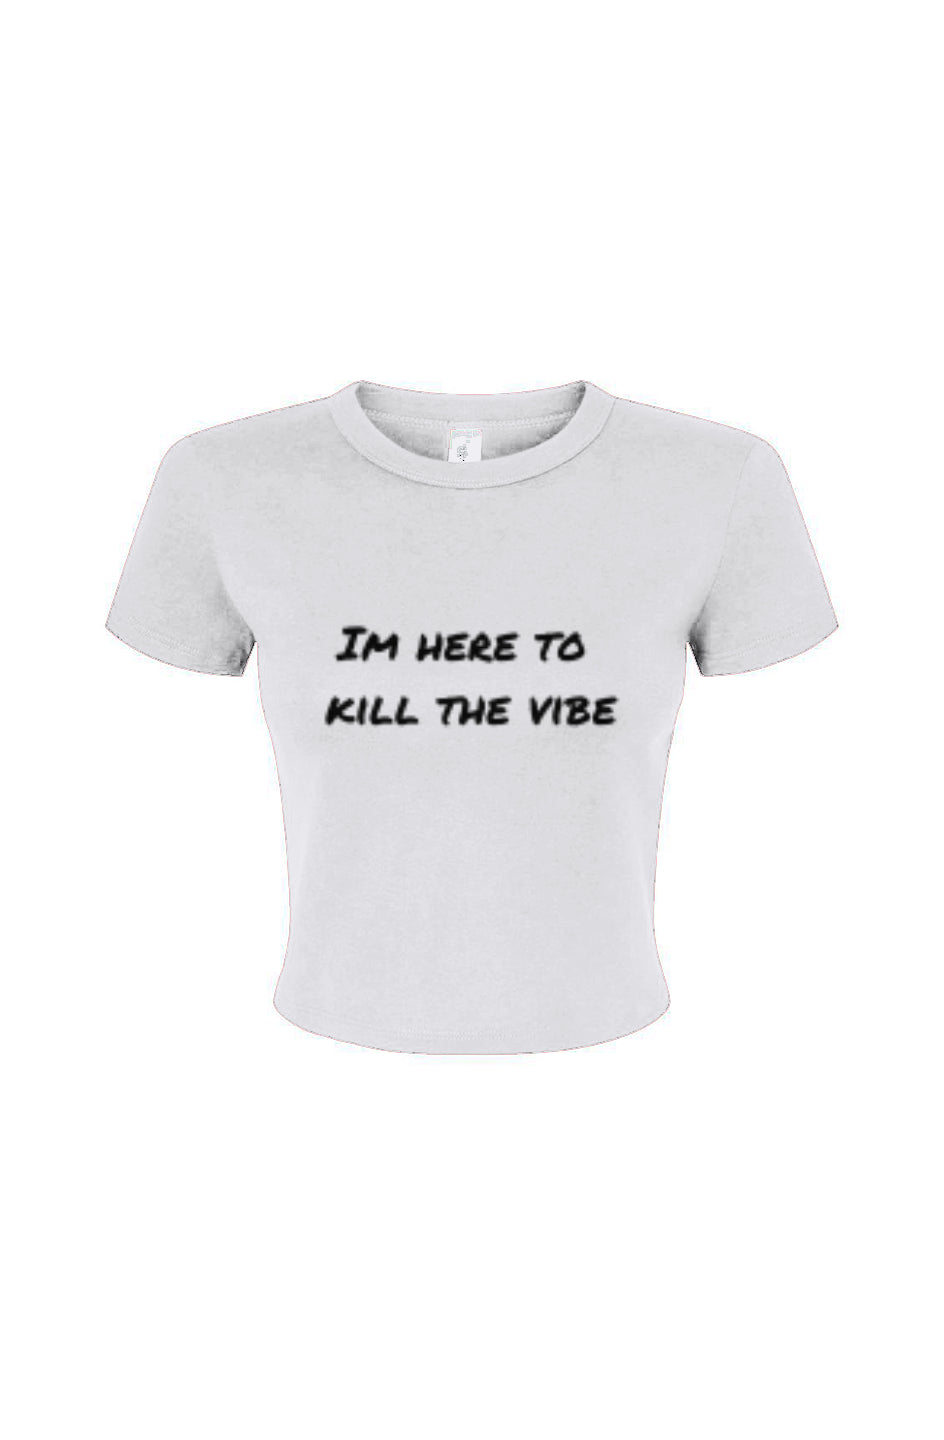 "I'm here to kill the vibe" - Baby